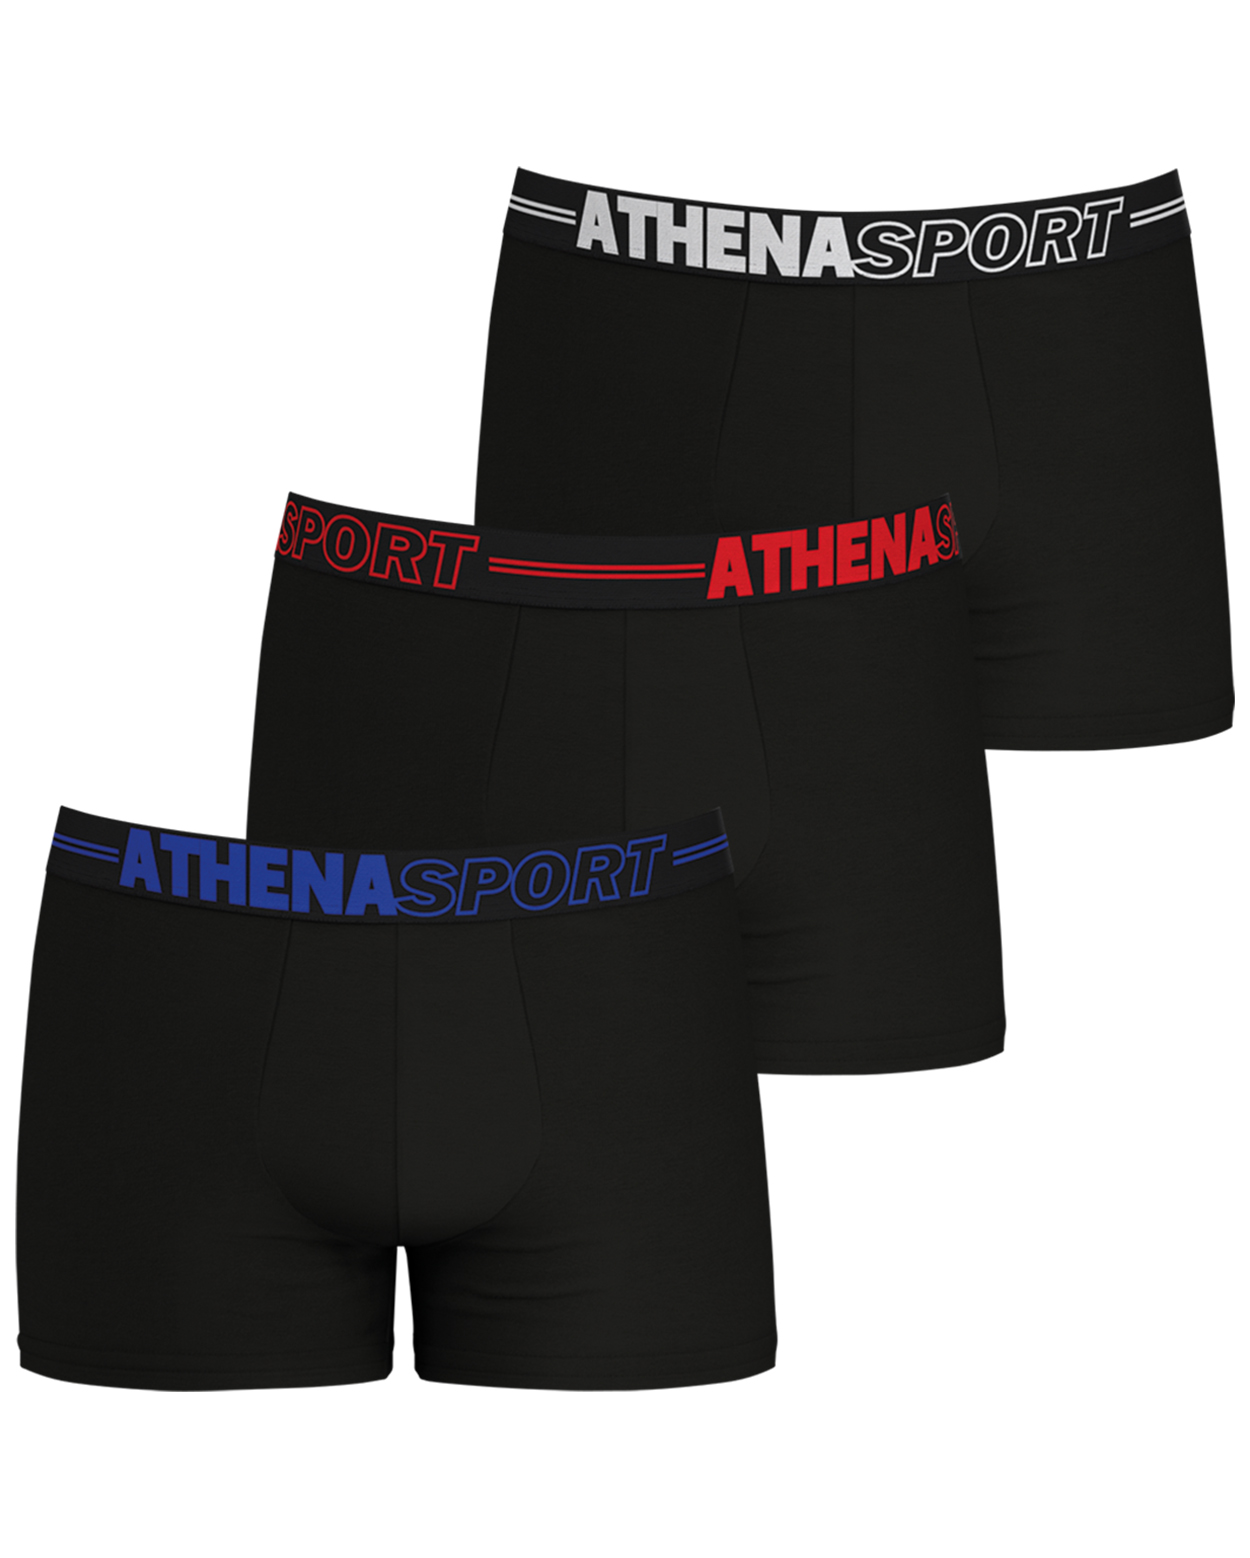 lot de 3 boxers athena noirs avec nom de la marque inscrit sur la ceinture élastiquée